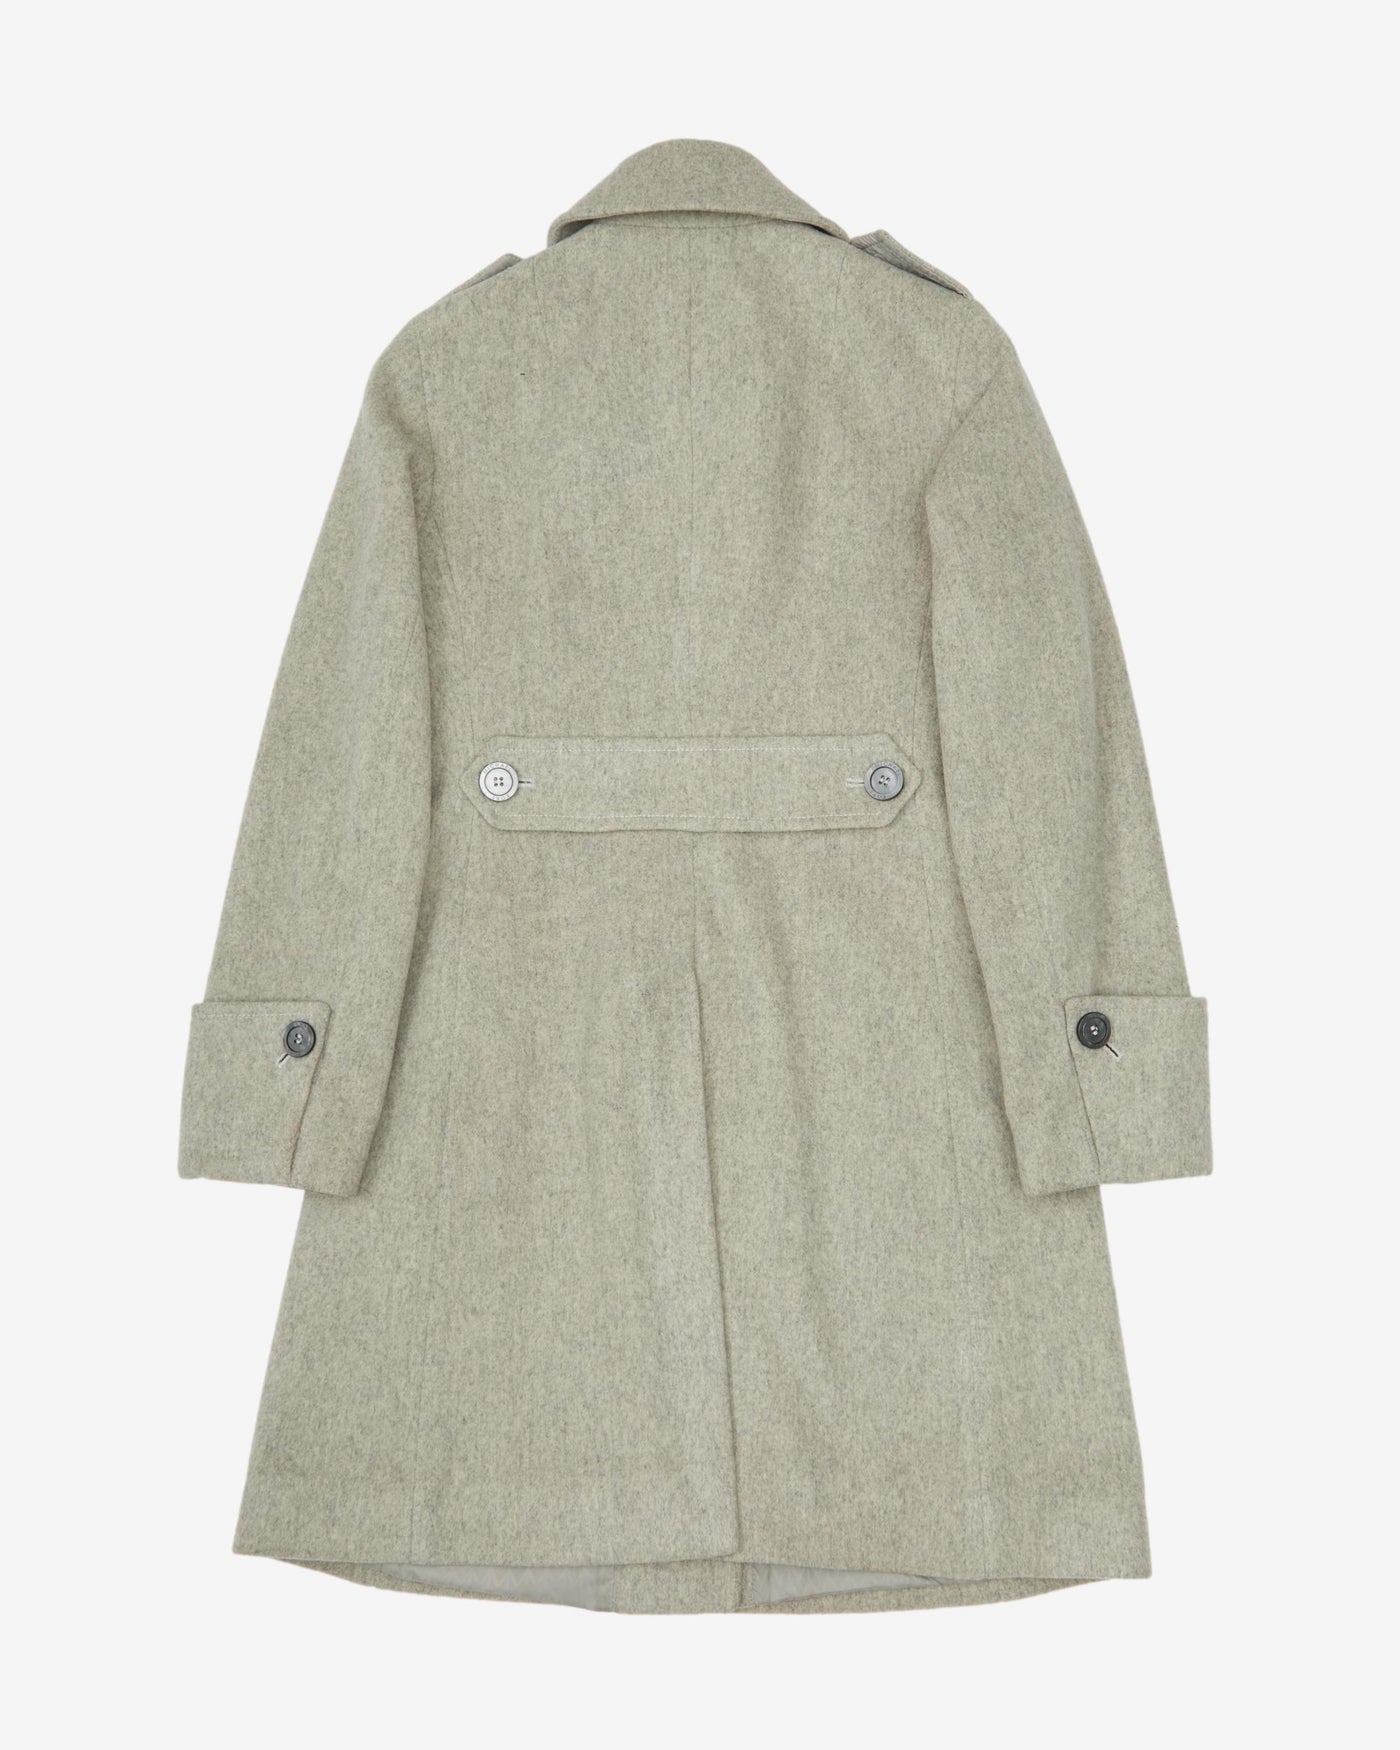 Michael Kors Grey Wool Overcoat - XS / S